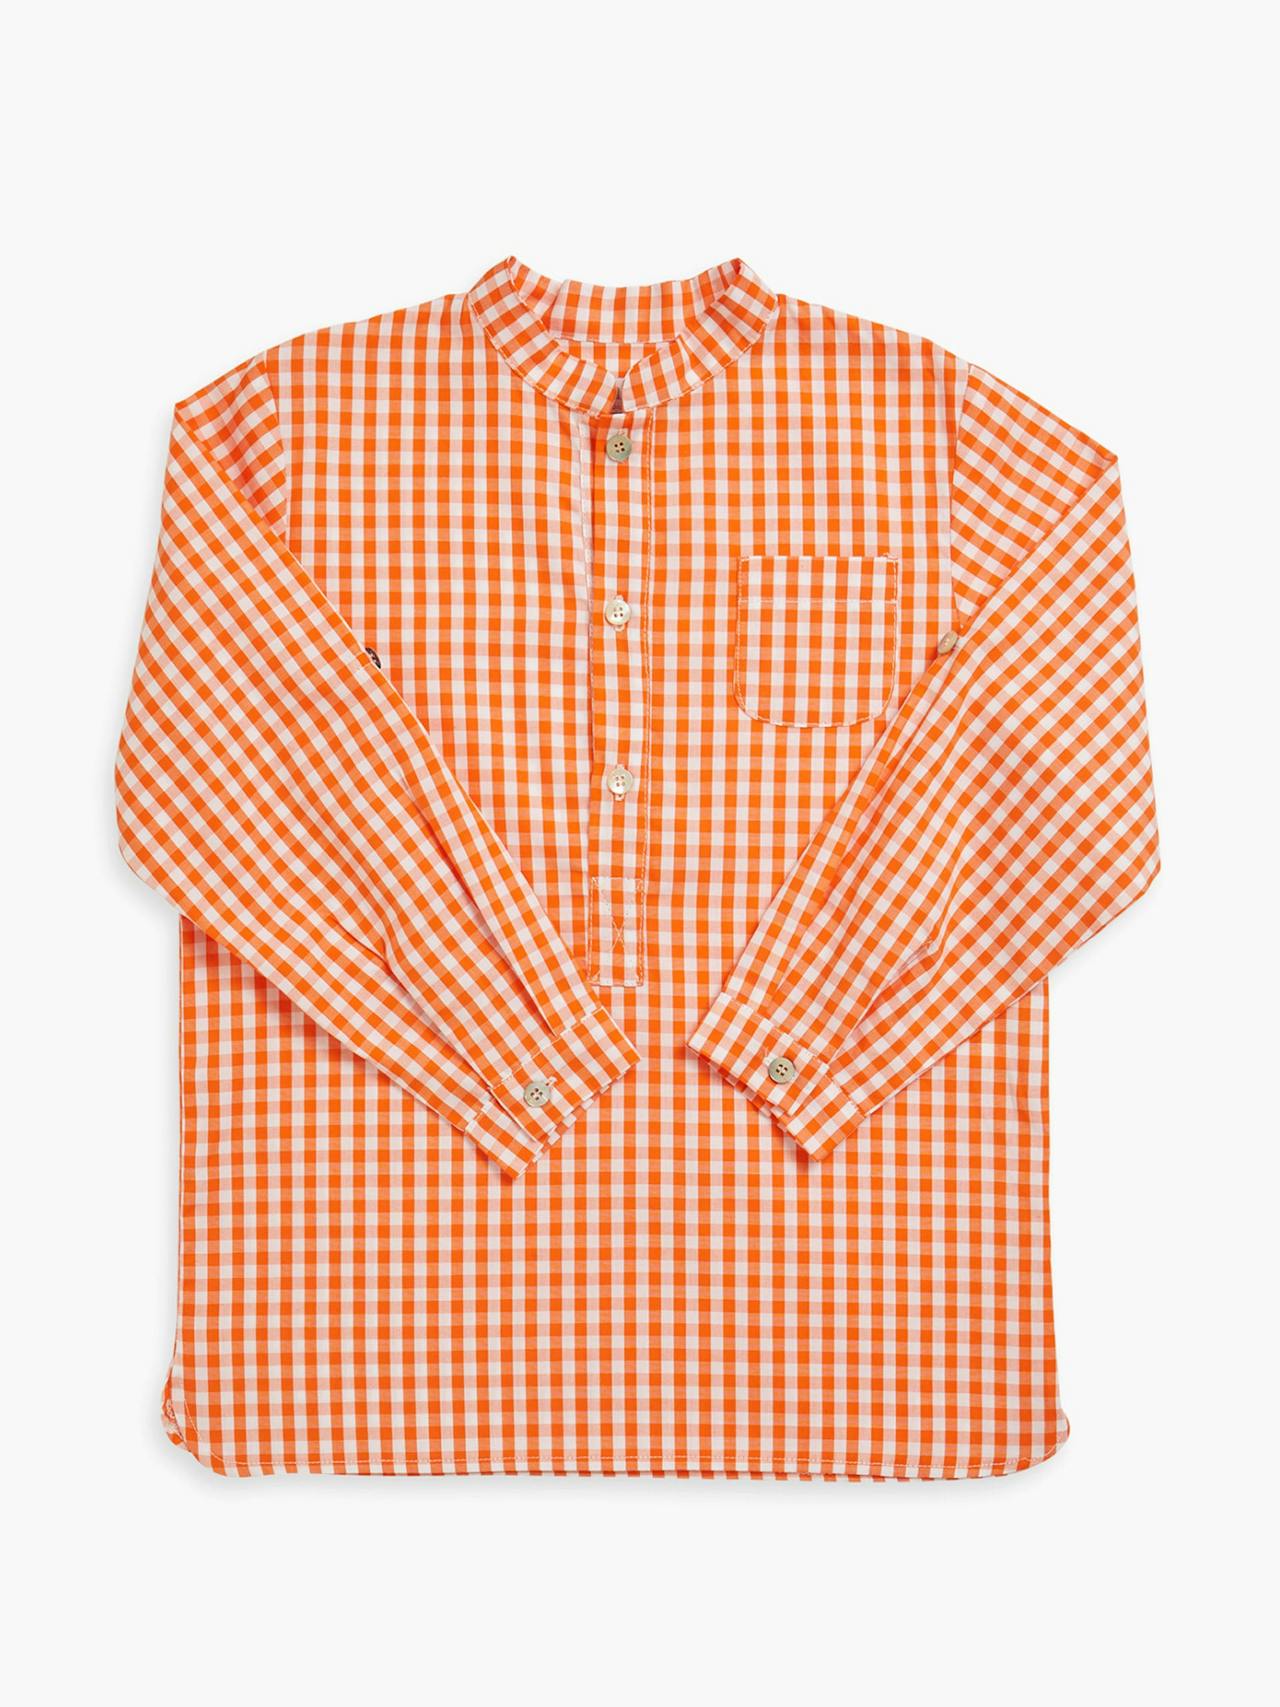 Pereprine shirt orange vichy